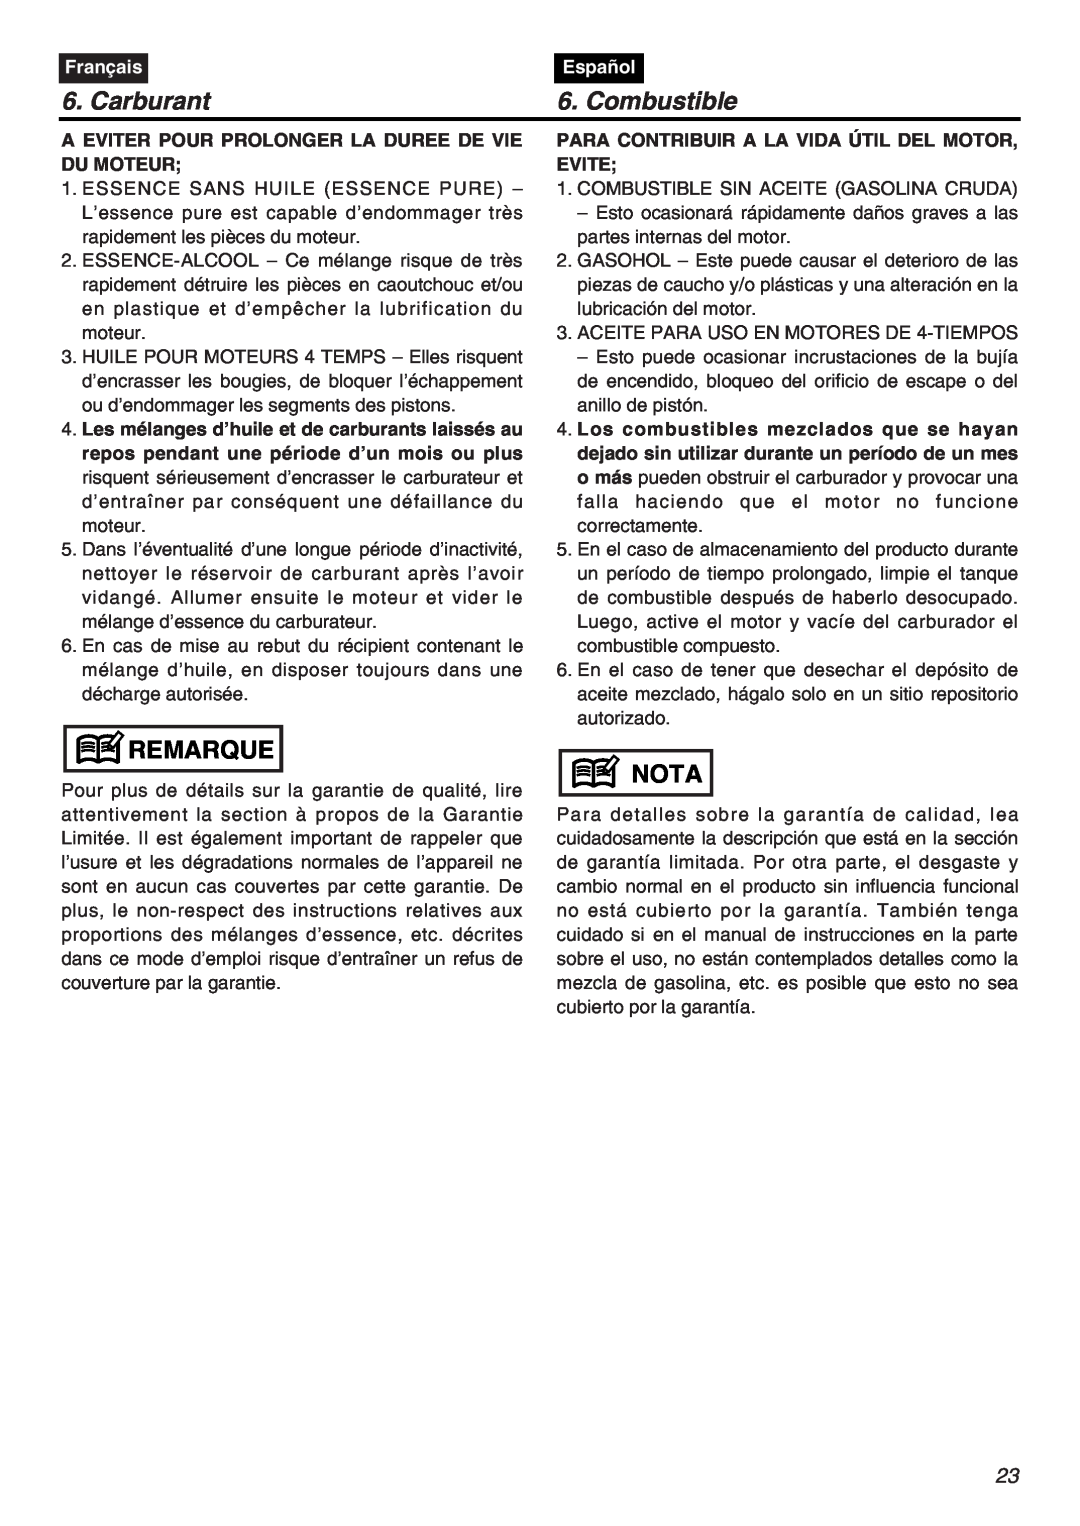 RedMax CHTZ2401L-CA, CHTZ2401-CA manual Carburant, Combustible, Remarque, Nota, Français, Español 